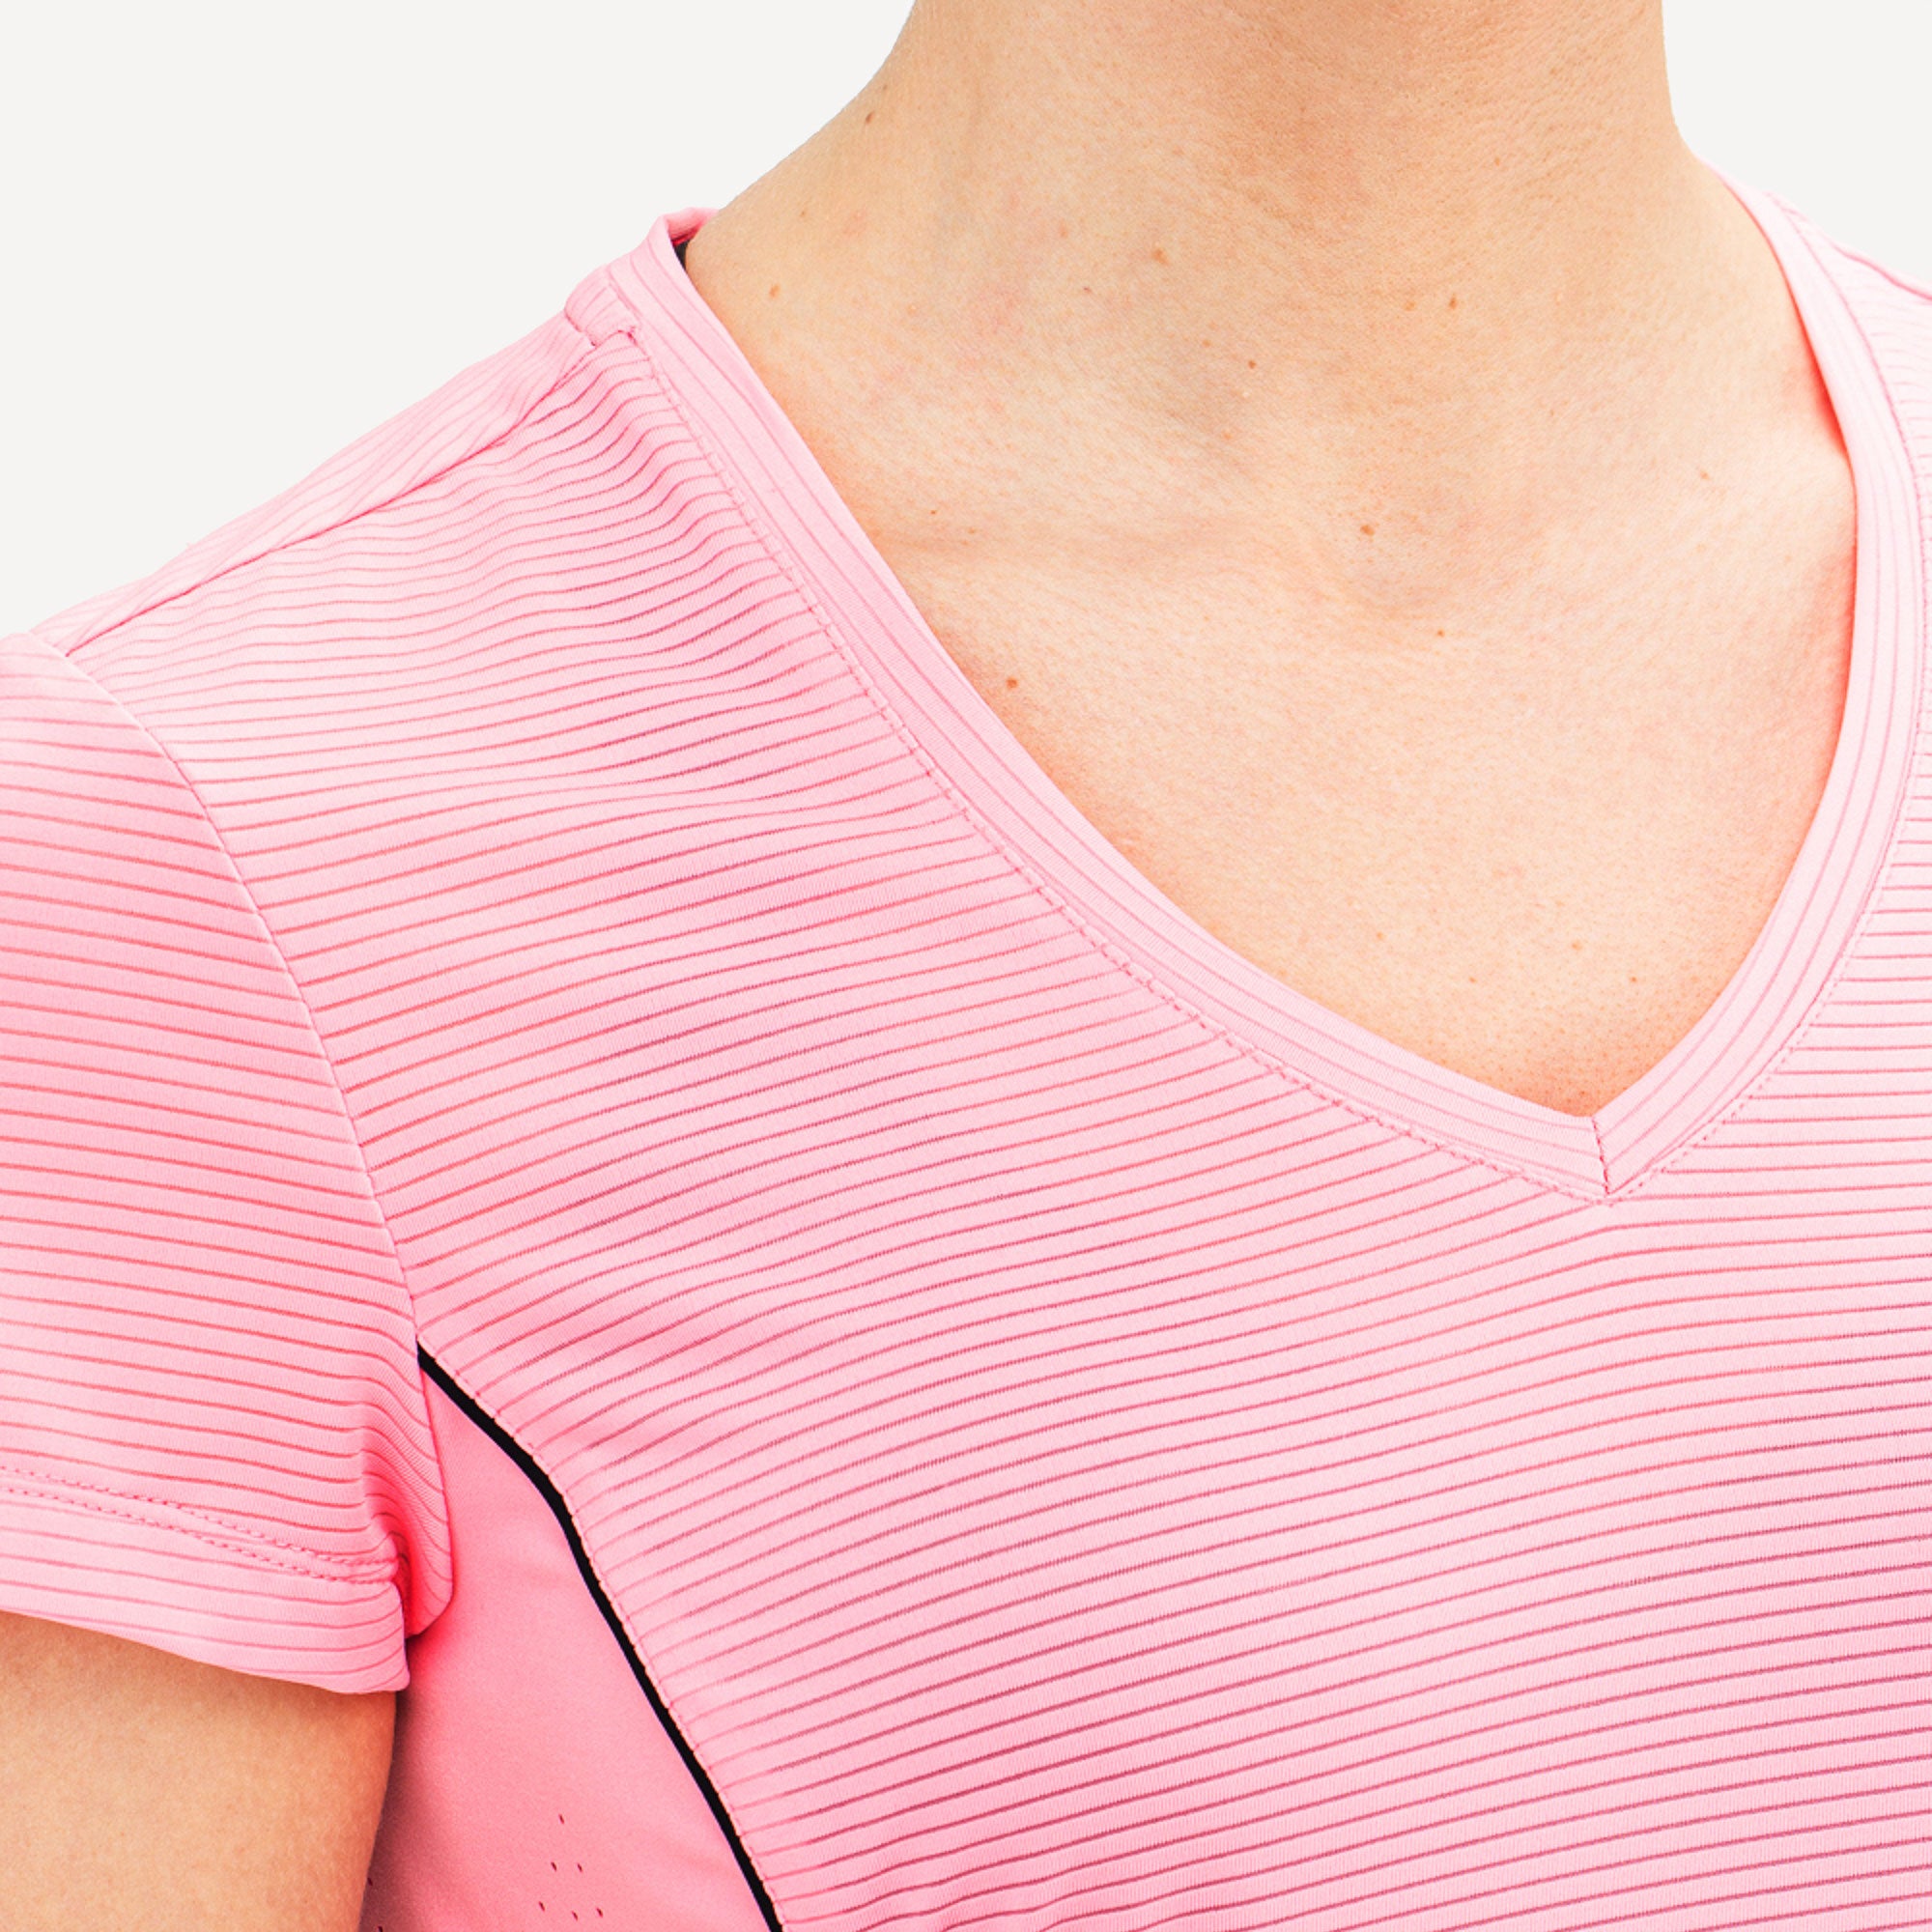 Sjeng Sports Annika Women's Tennis Shirt Pink (4)